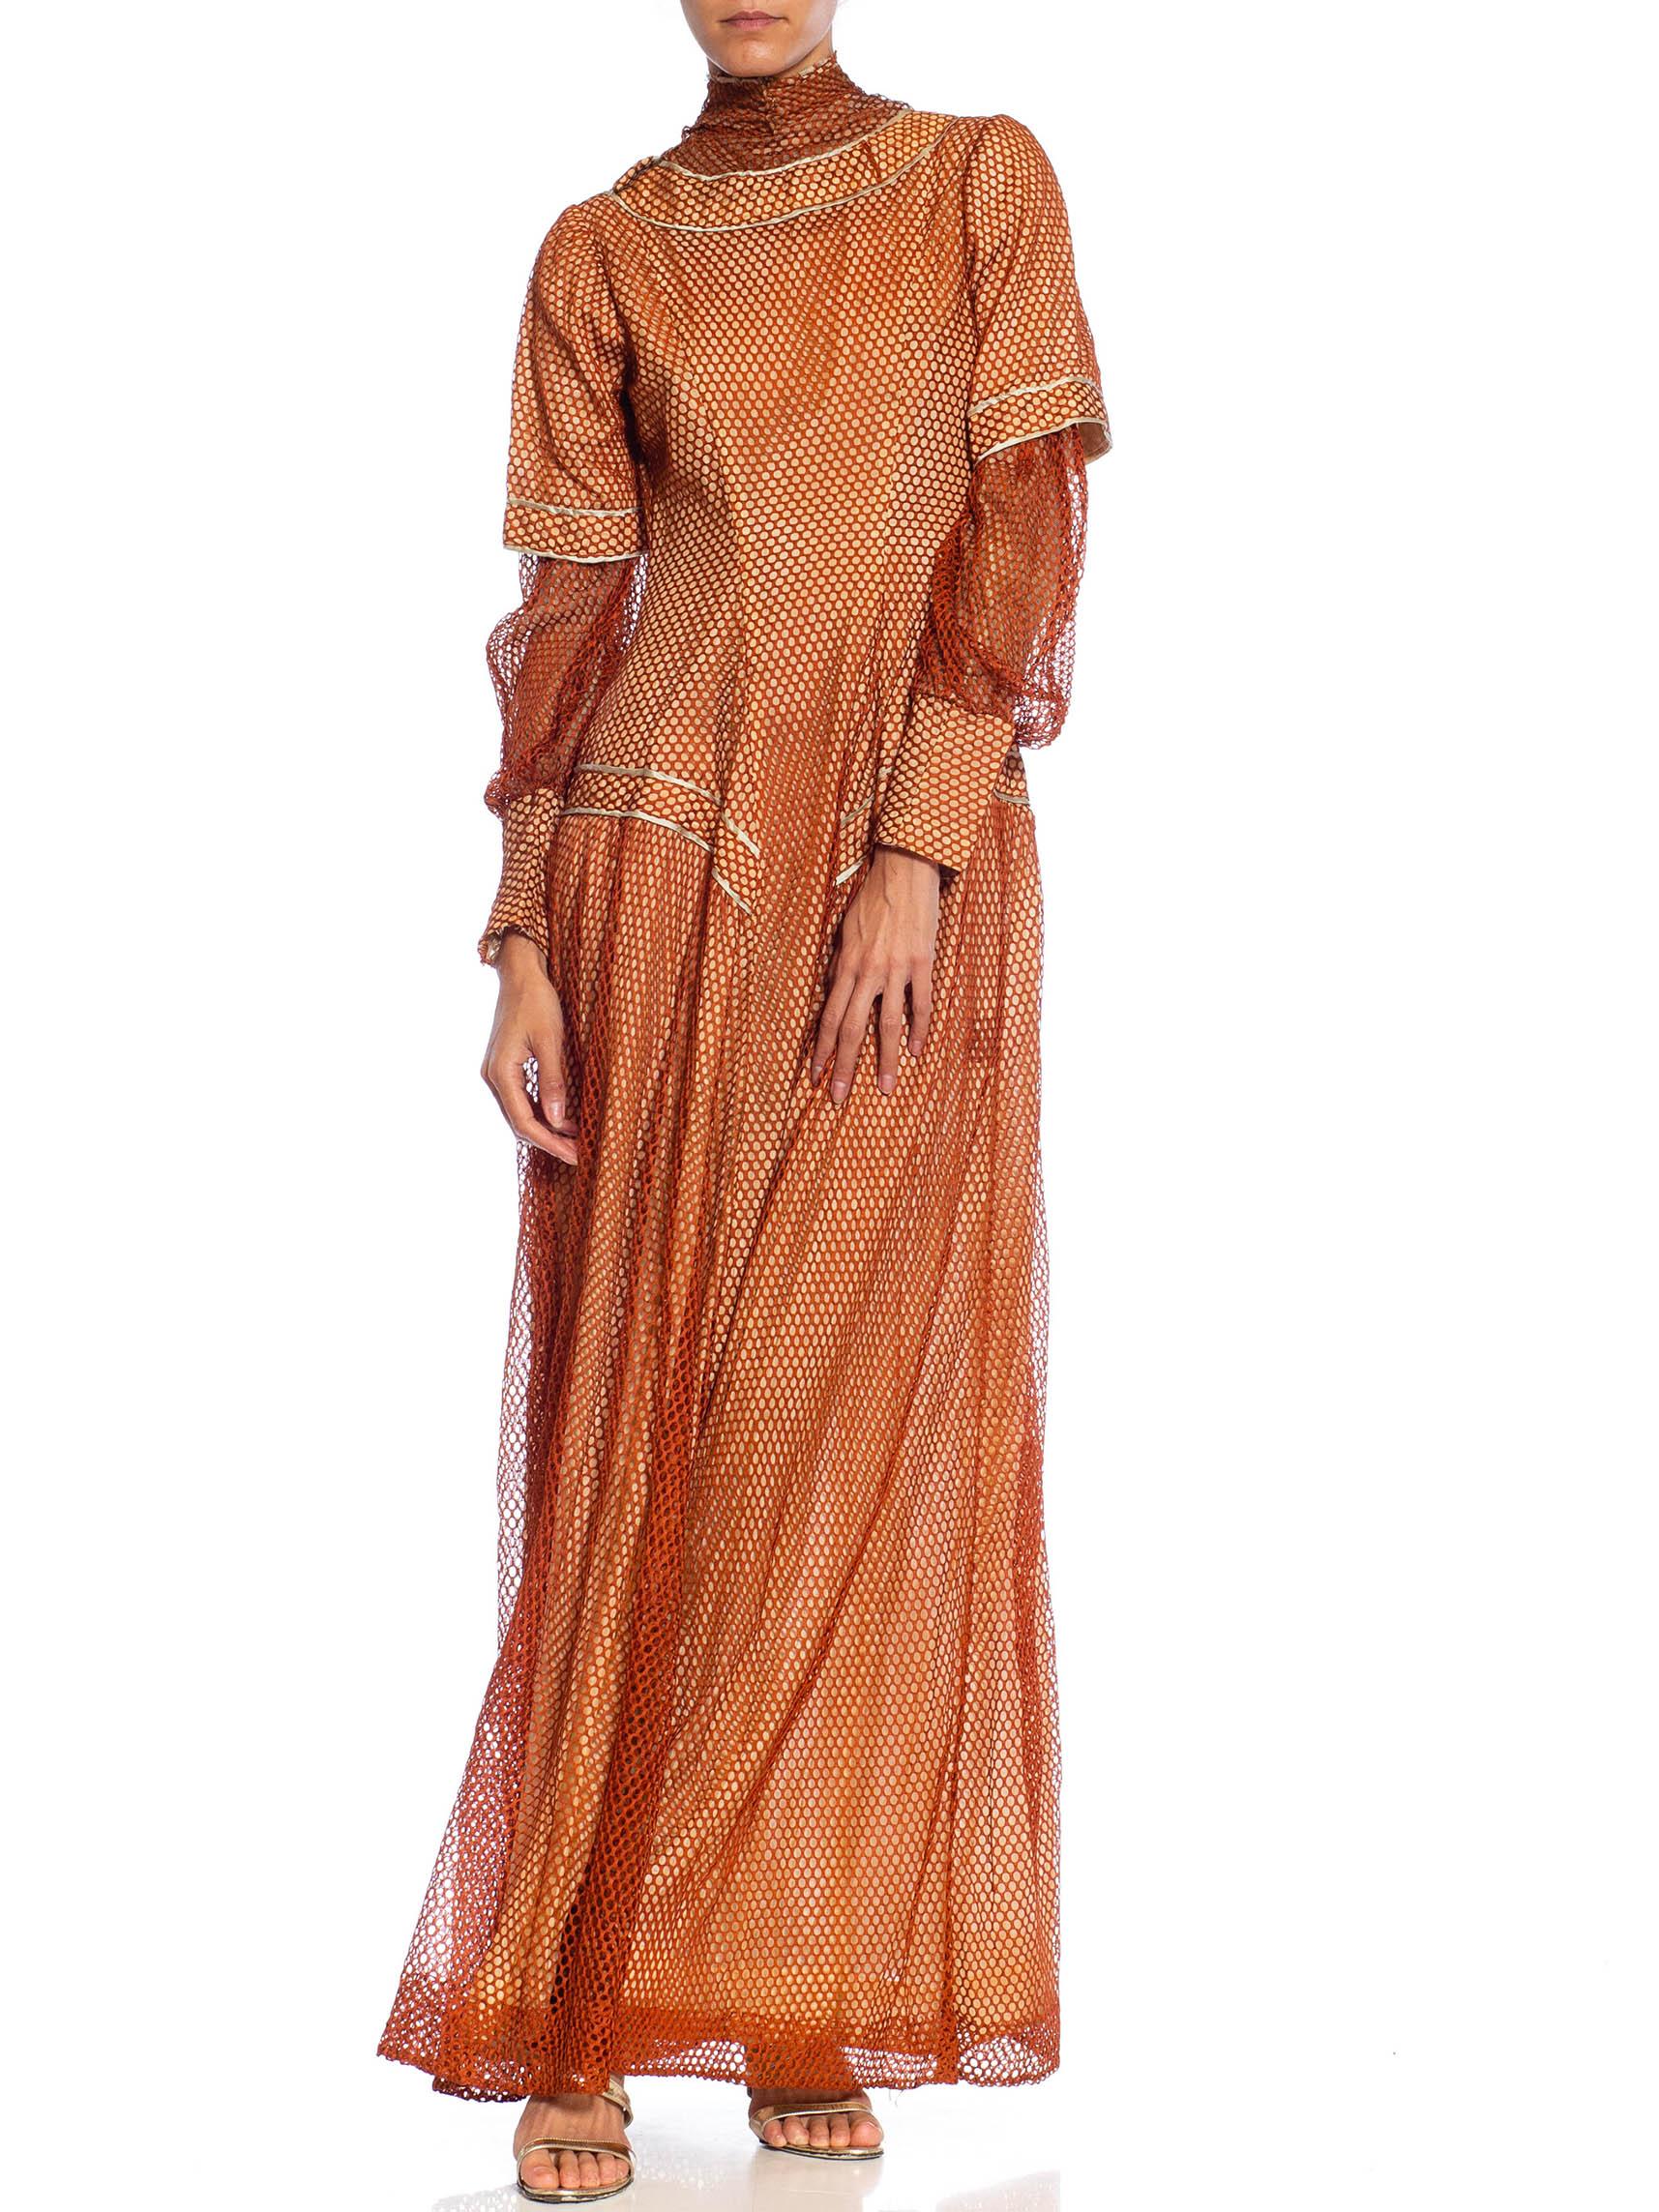 Robe édouardienne en maille de soie bronze sur soie rose pâle avec manches longues Pour femmes en vente